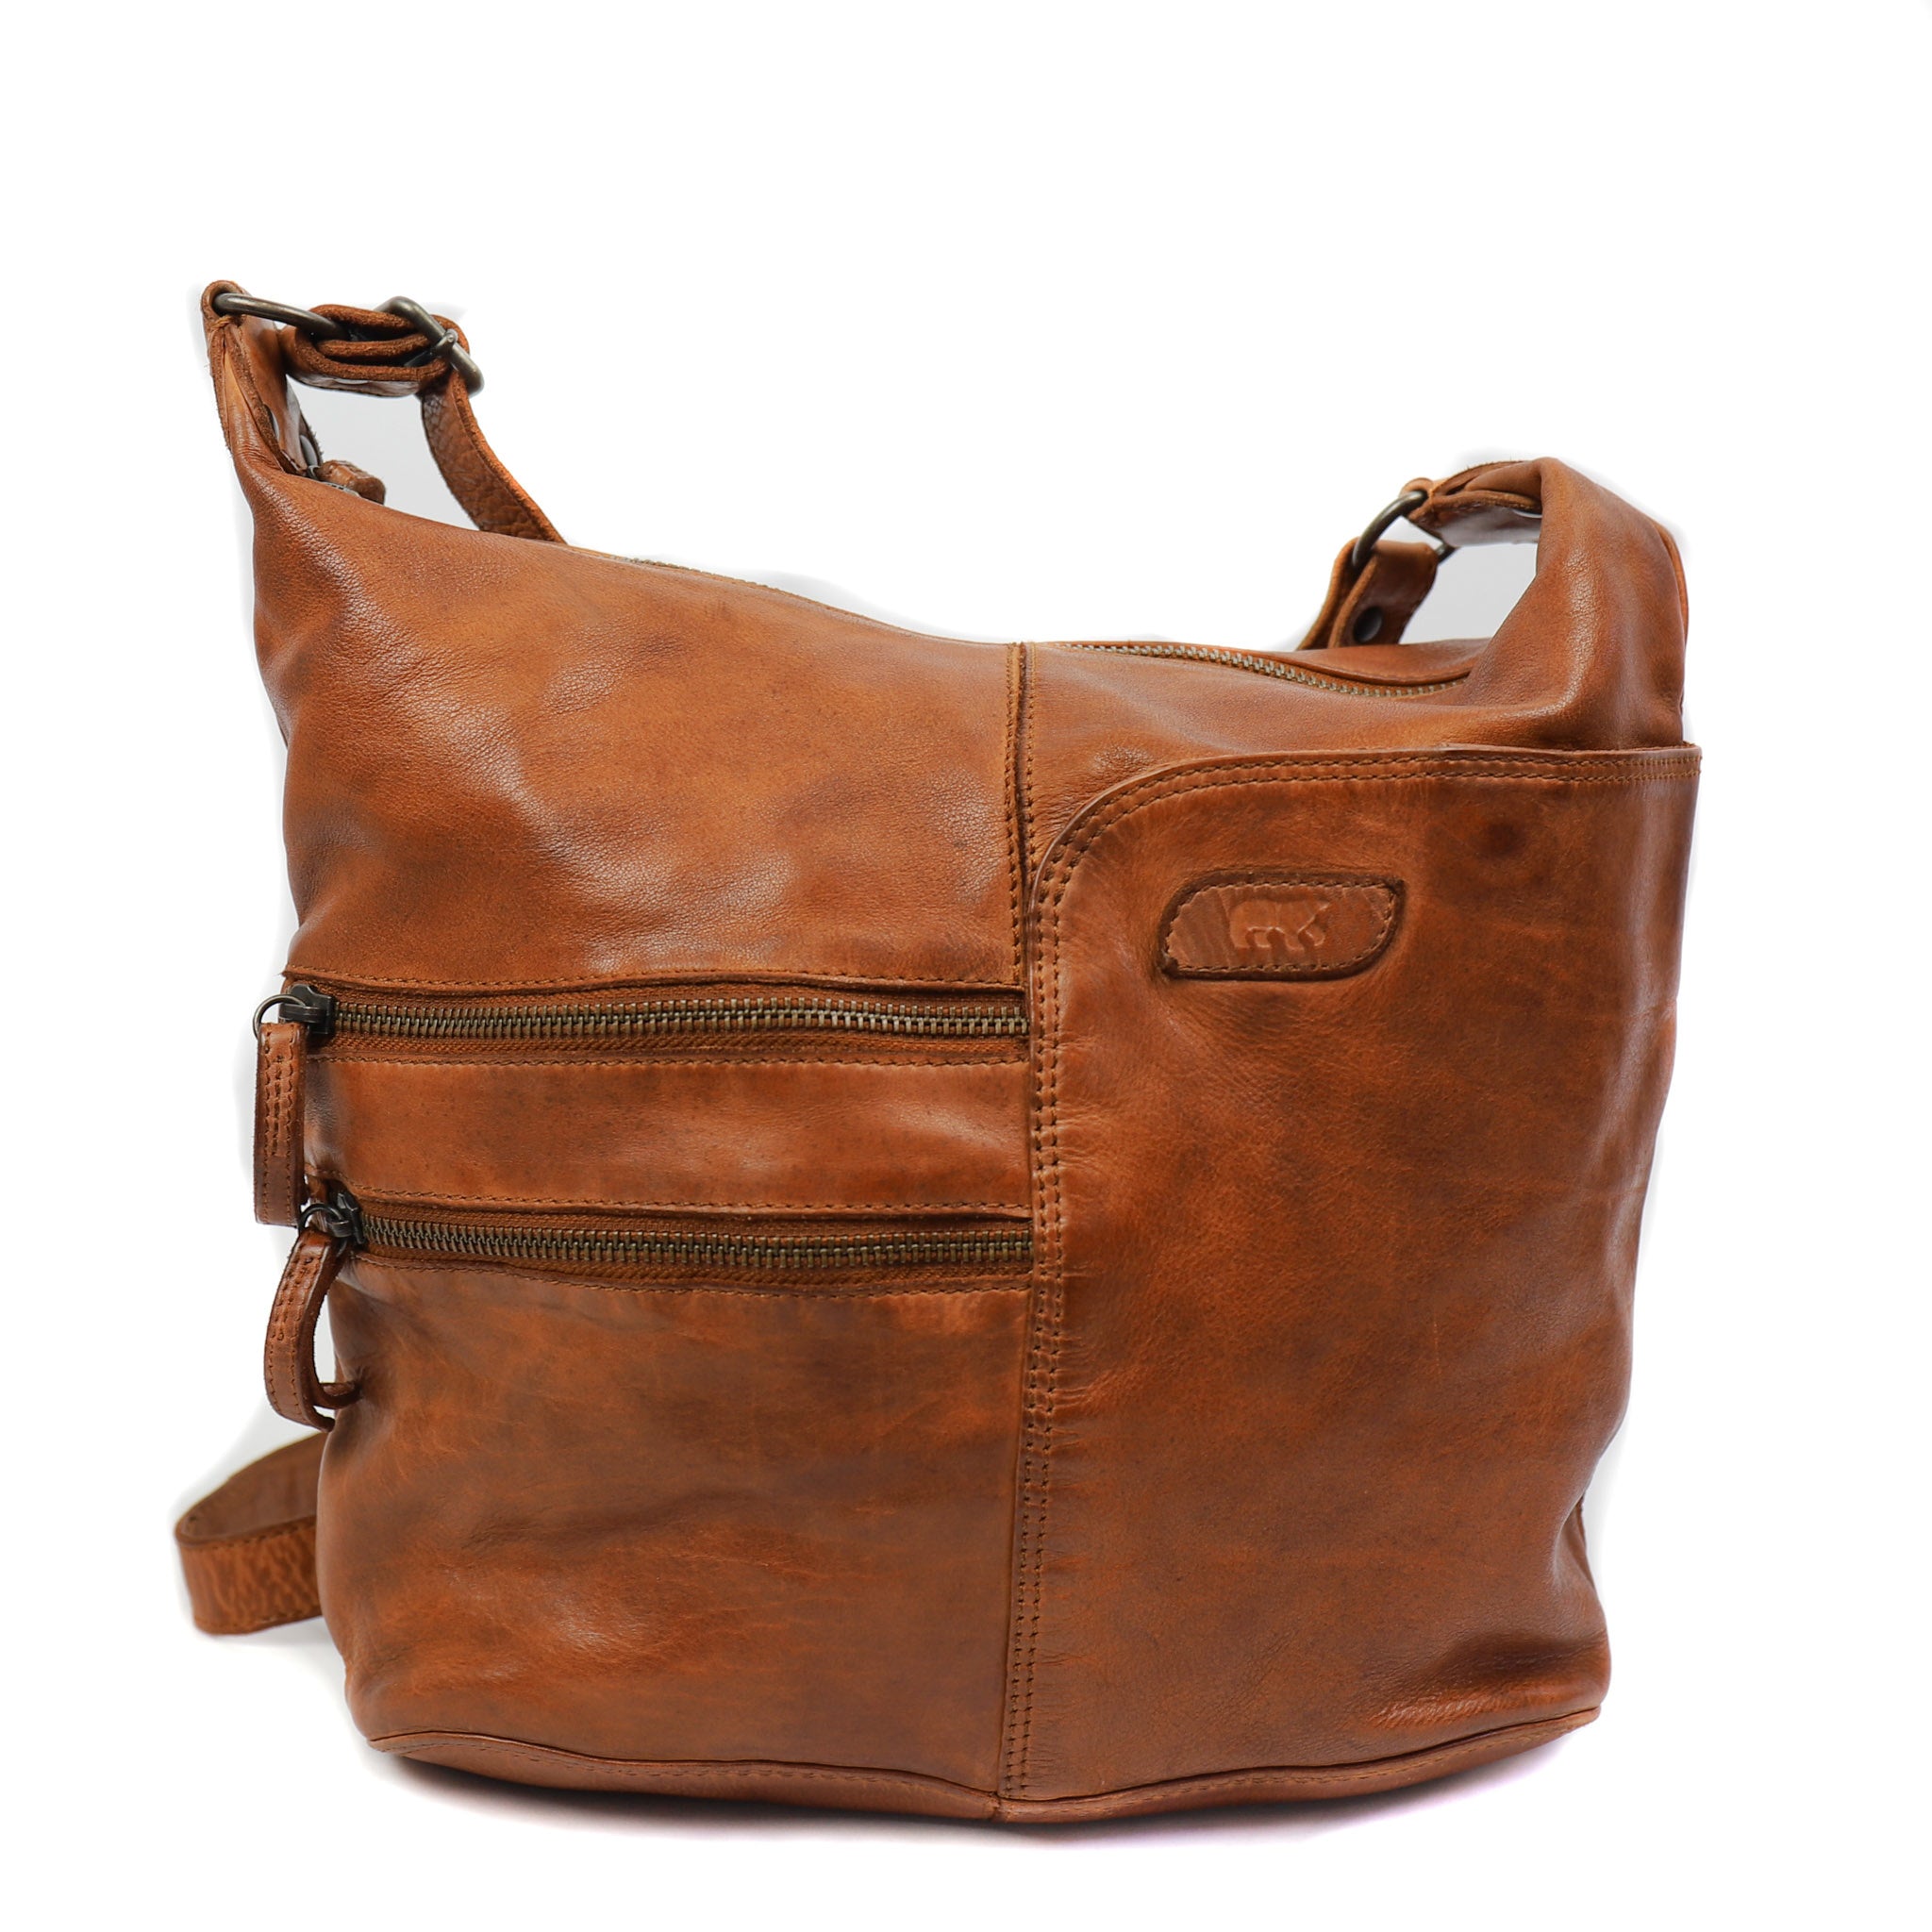 Shoulder bag 'Frieda' cognac - CL 40498